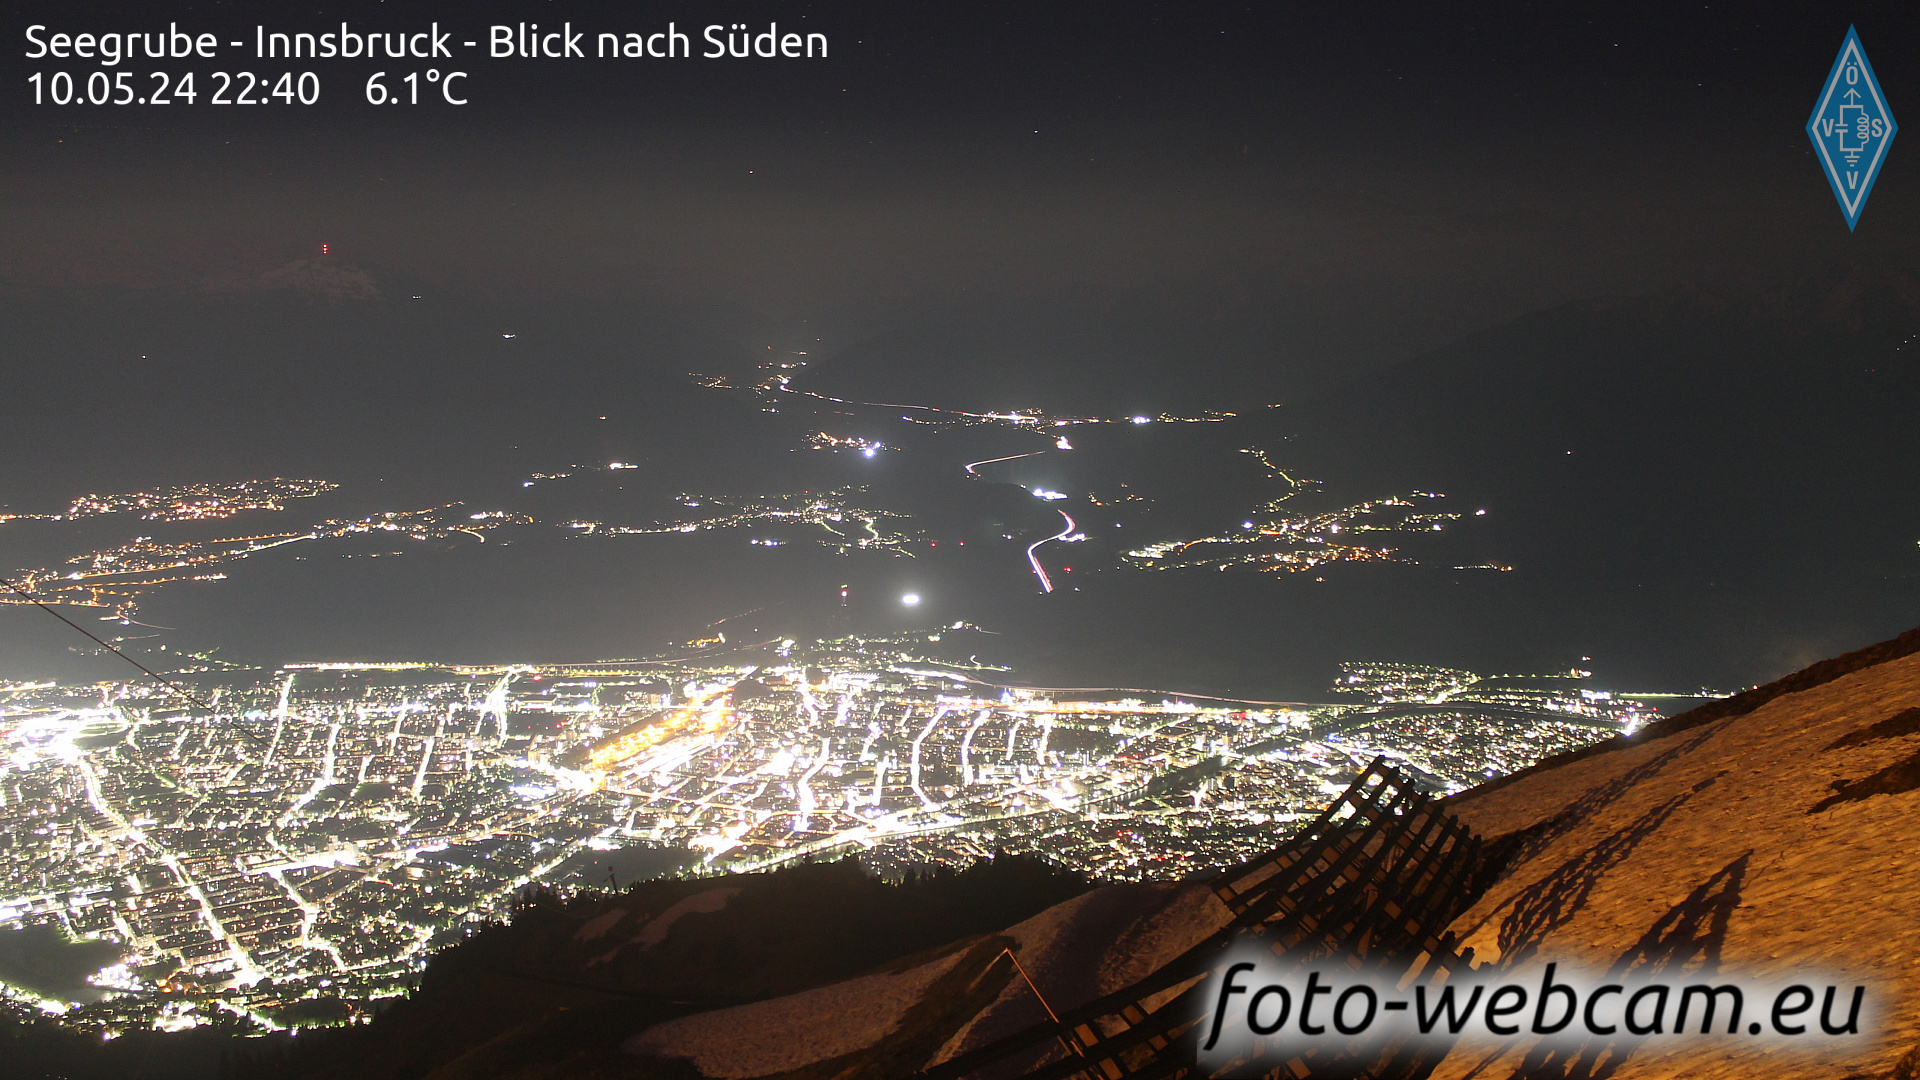 Innsbruck Do. 22:48